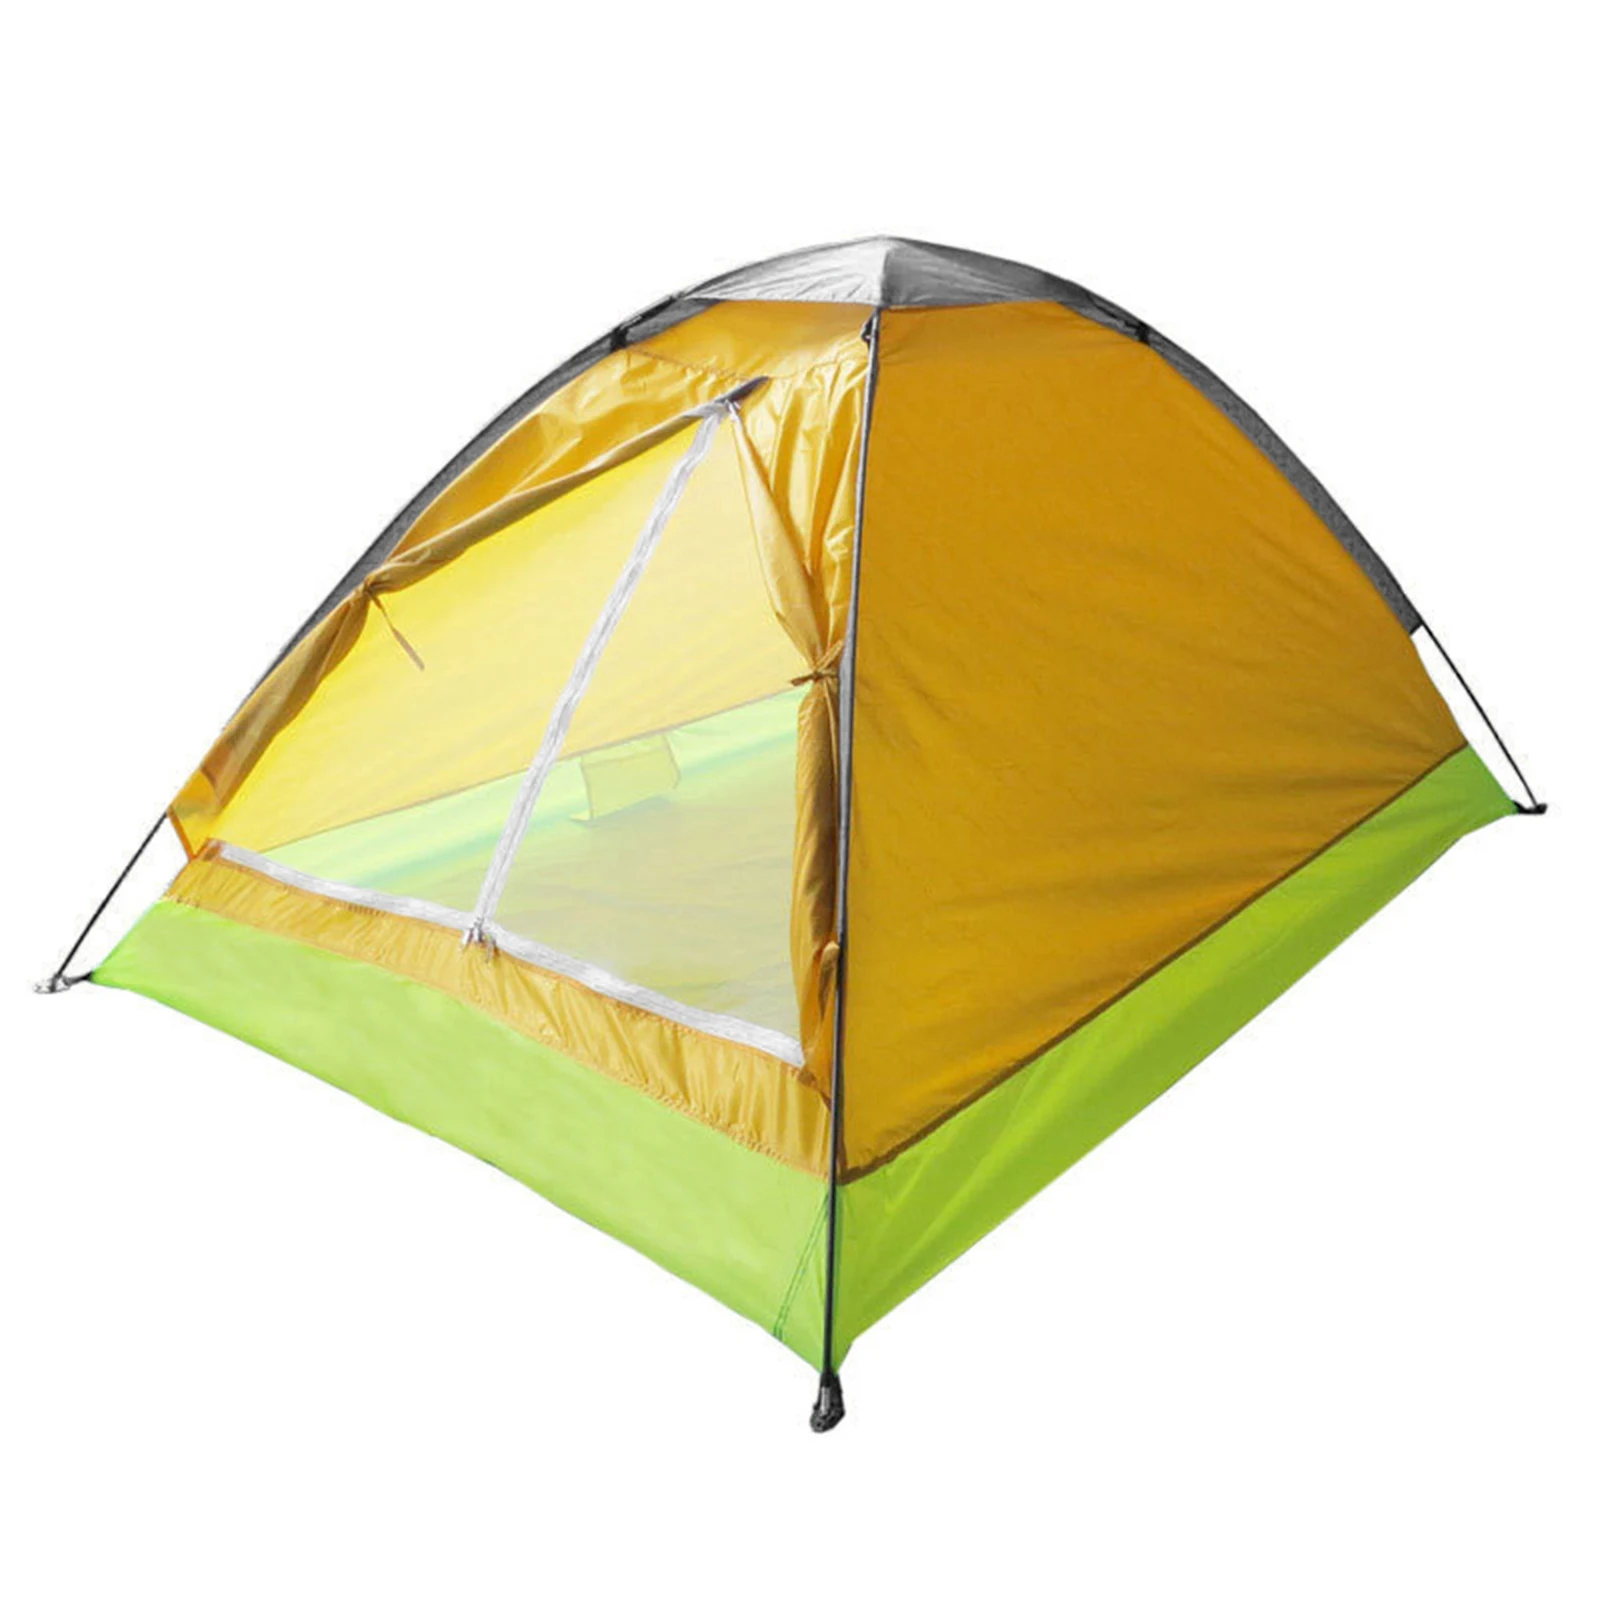 

Палатка для кемпинга на 2 человек с чехлом для переноски от дождя, легкая палатка для пешего туризма, портативное оборудование для кемпинга в дикой природе